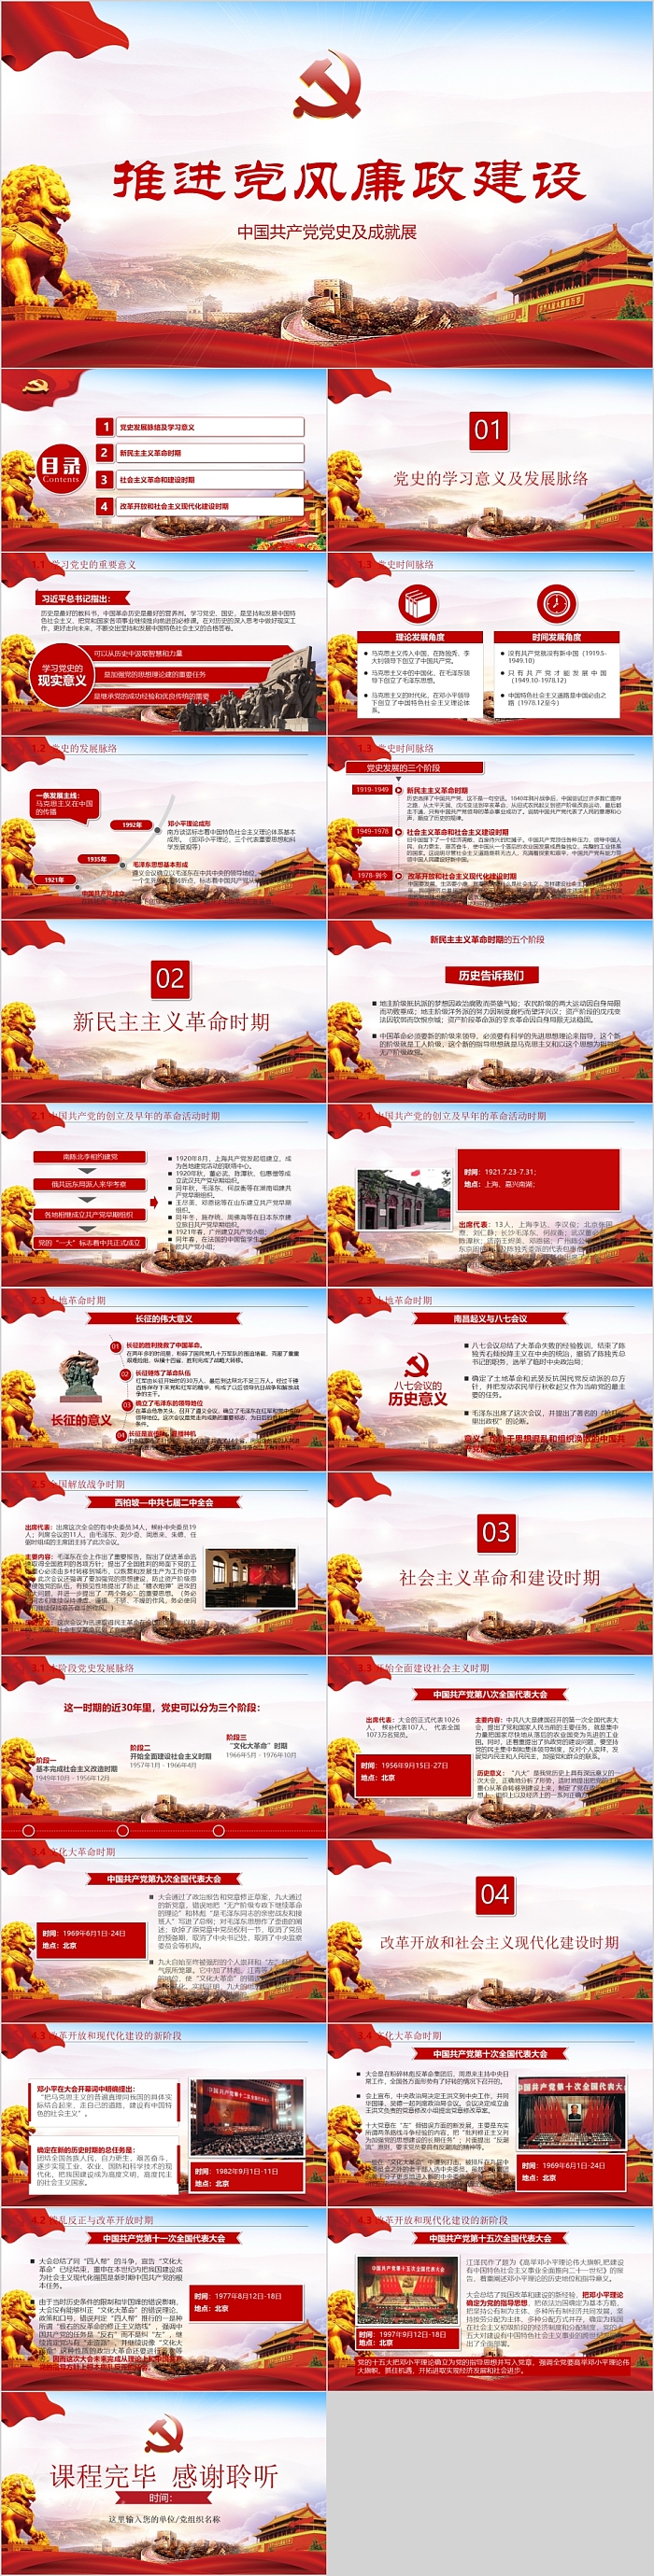 推进党风廉政建设中国共产党党史及成就展